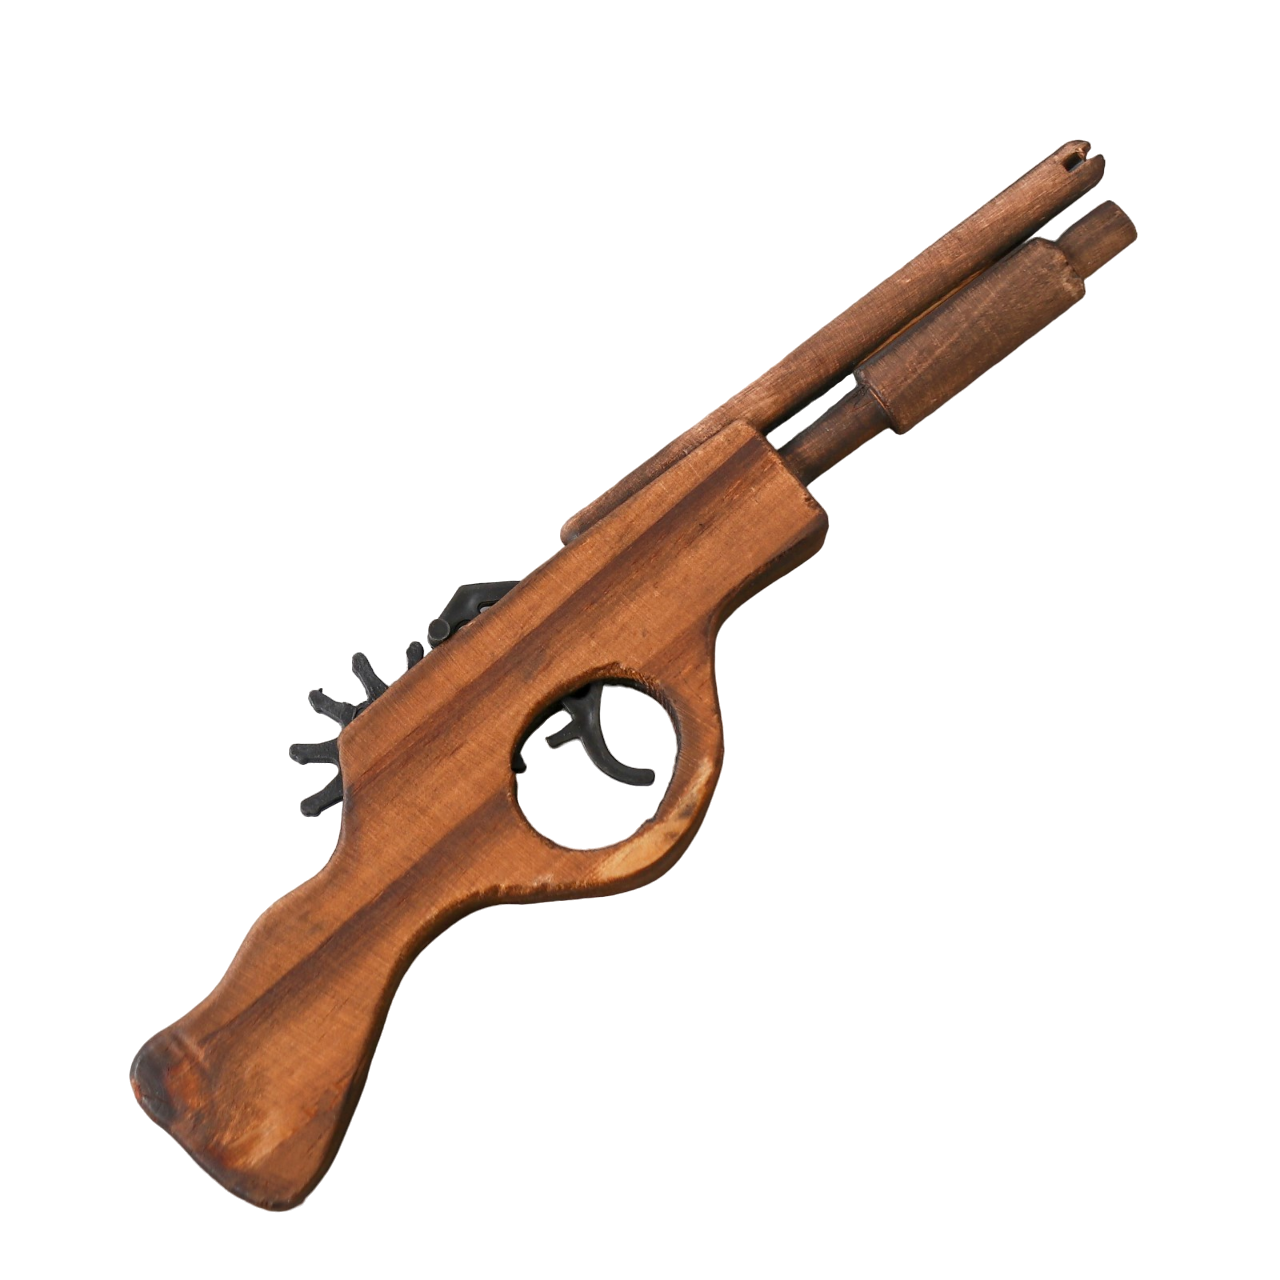 Игрушка деревянная стреляет резинками Пистолет 2,2x27x8 см деревянная игрушка lemmo конструктор пистолет резинкострел бластер